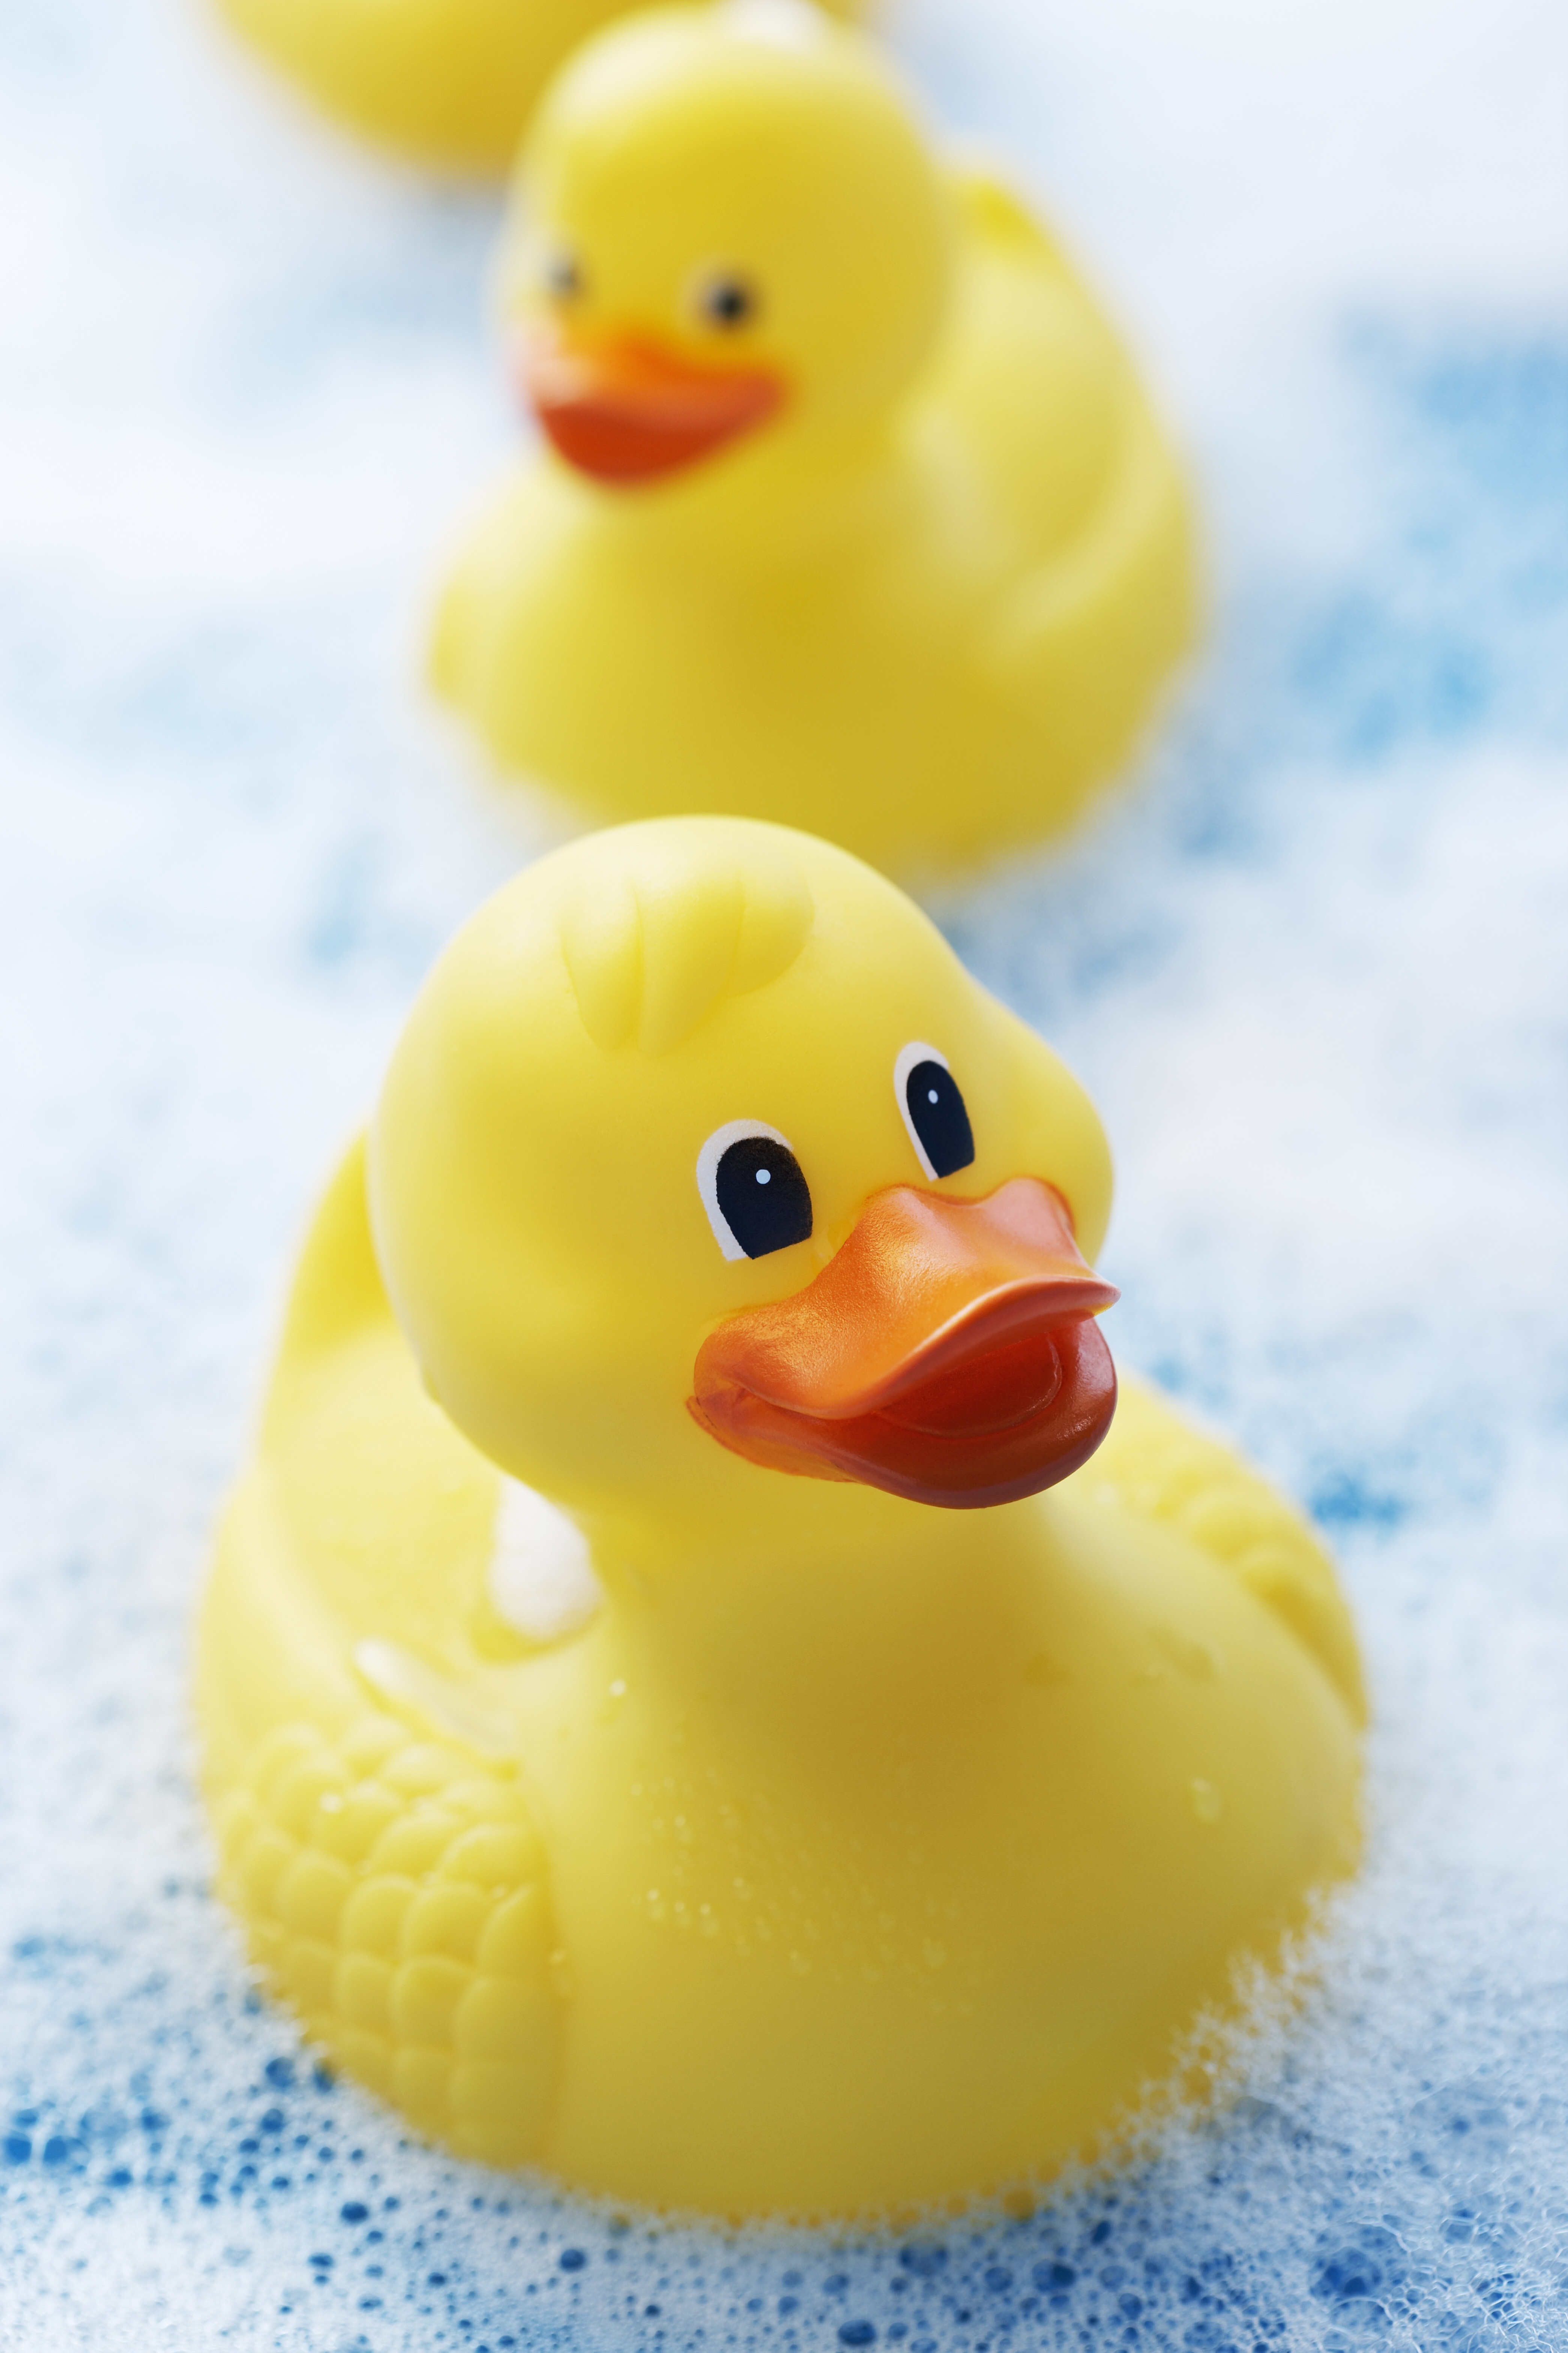 Rubber ducks in bubble bath